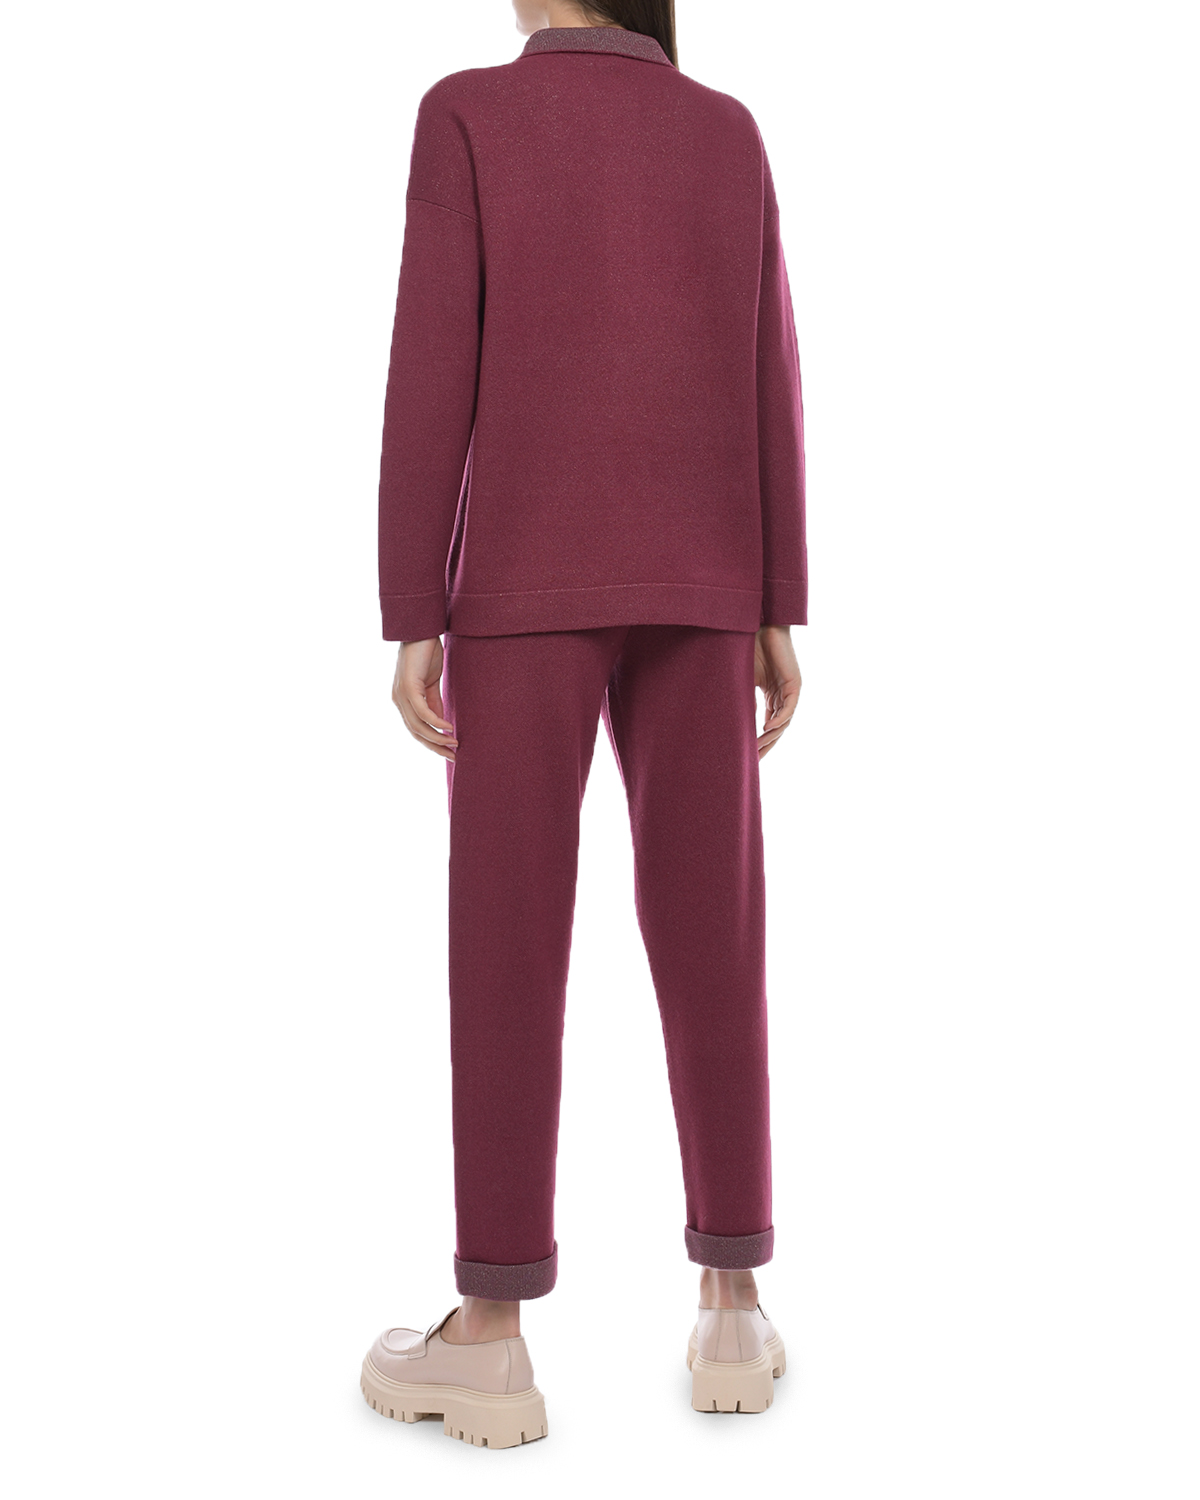 Бордовая рубашка из шерсти и шелка Panicale, размер 44, цвет бордовый - фото 3